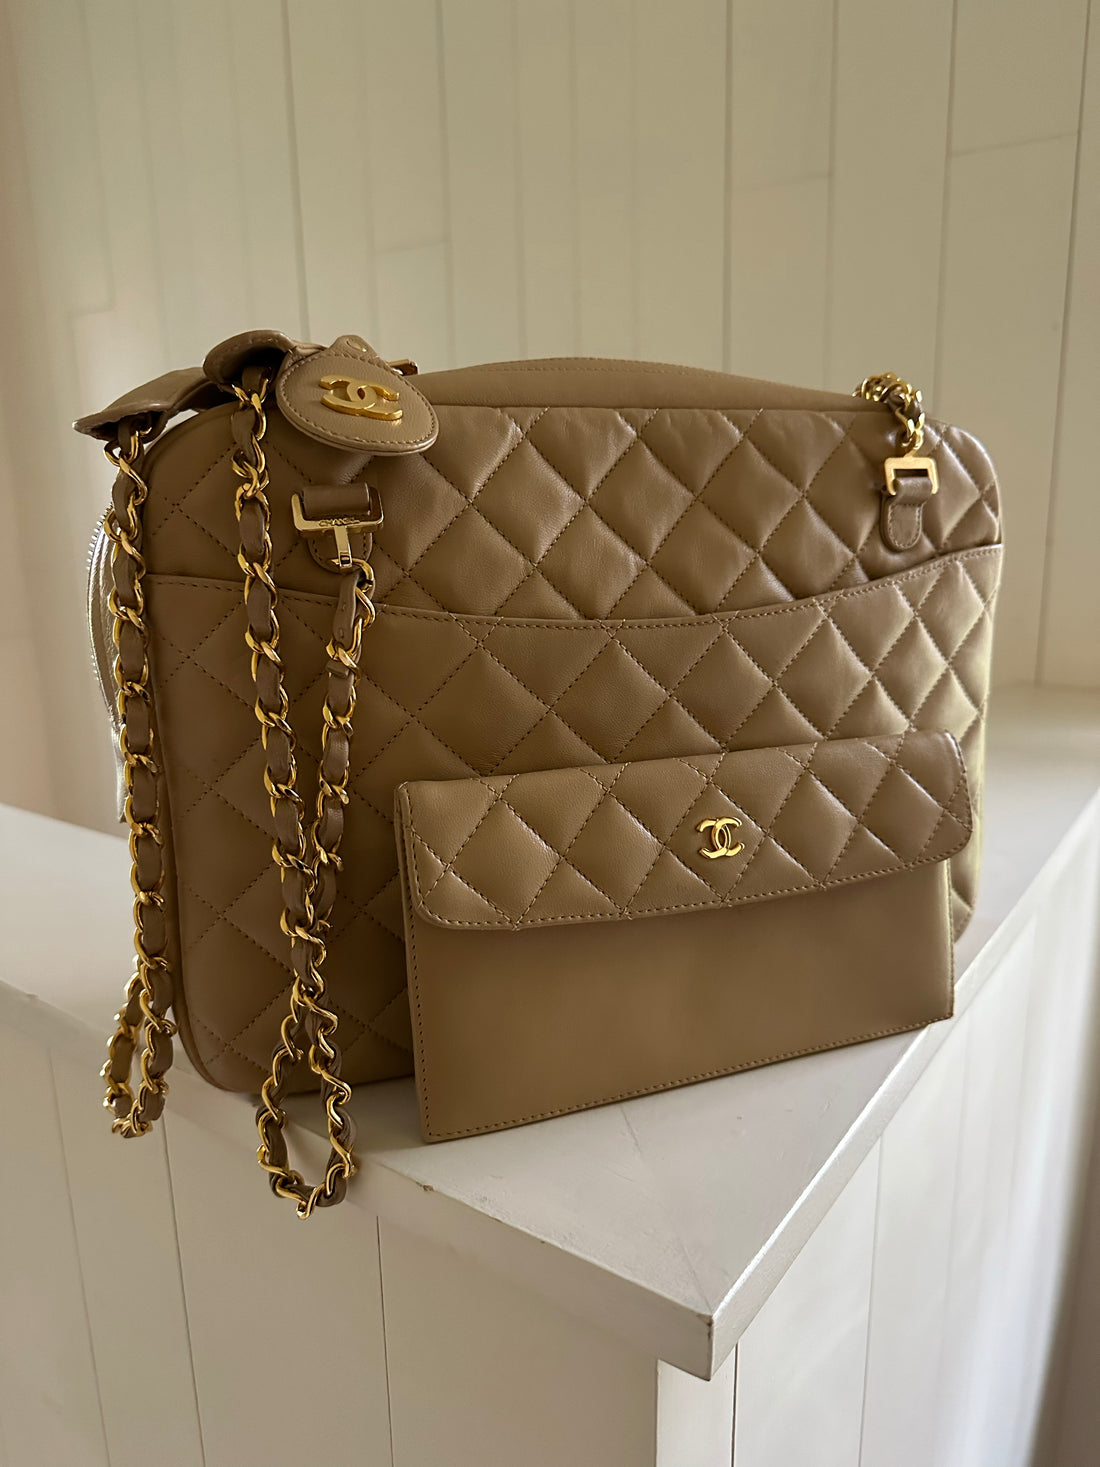 Chanel – Handbag Social Club